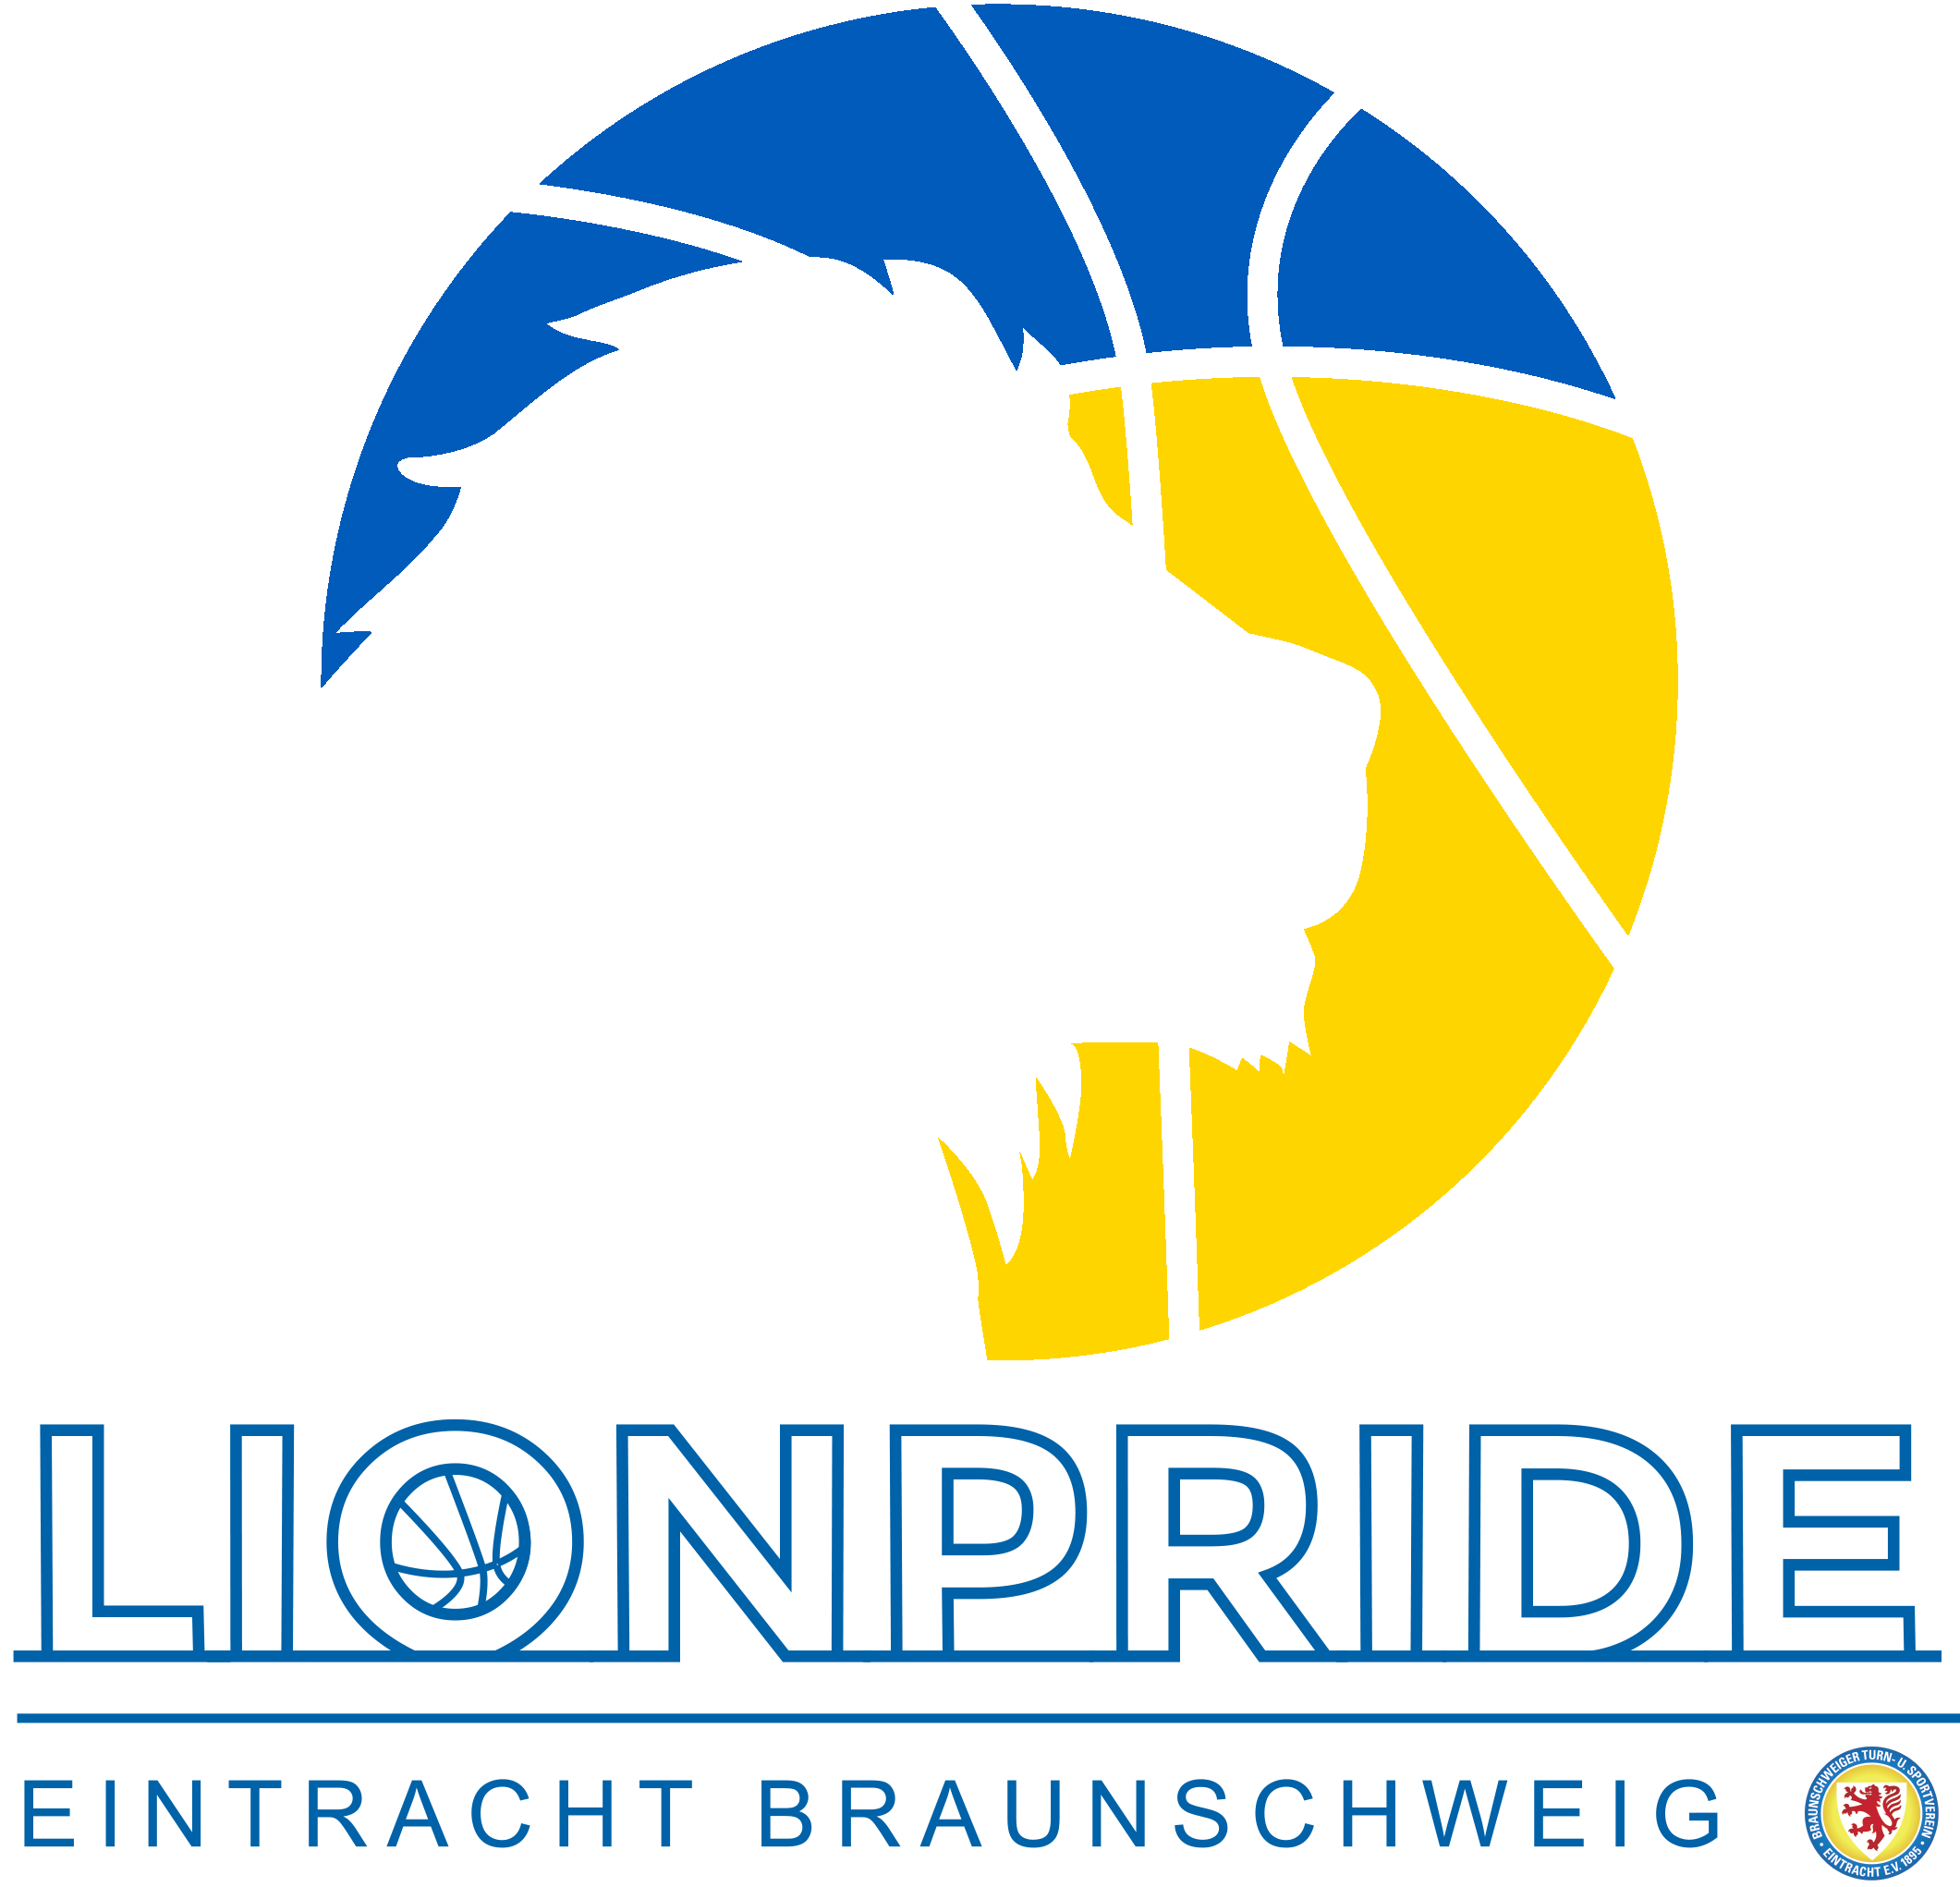 Logo - Eintracht Braunschweig LionPride